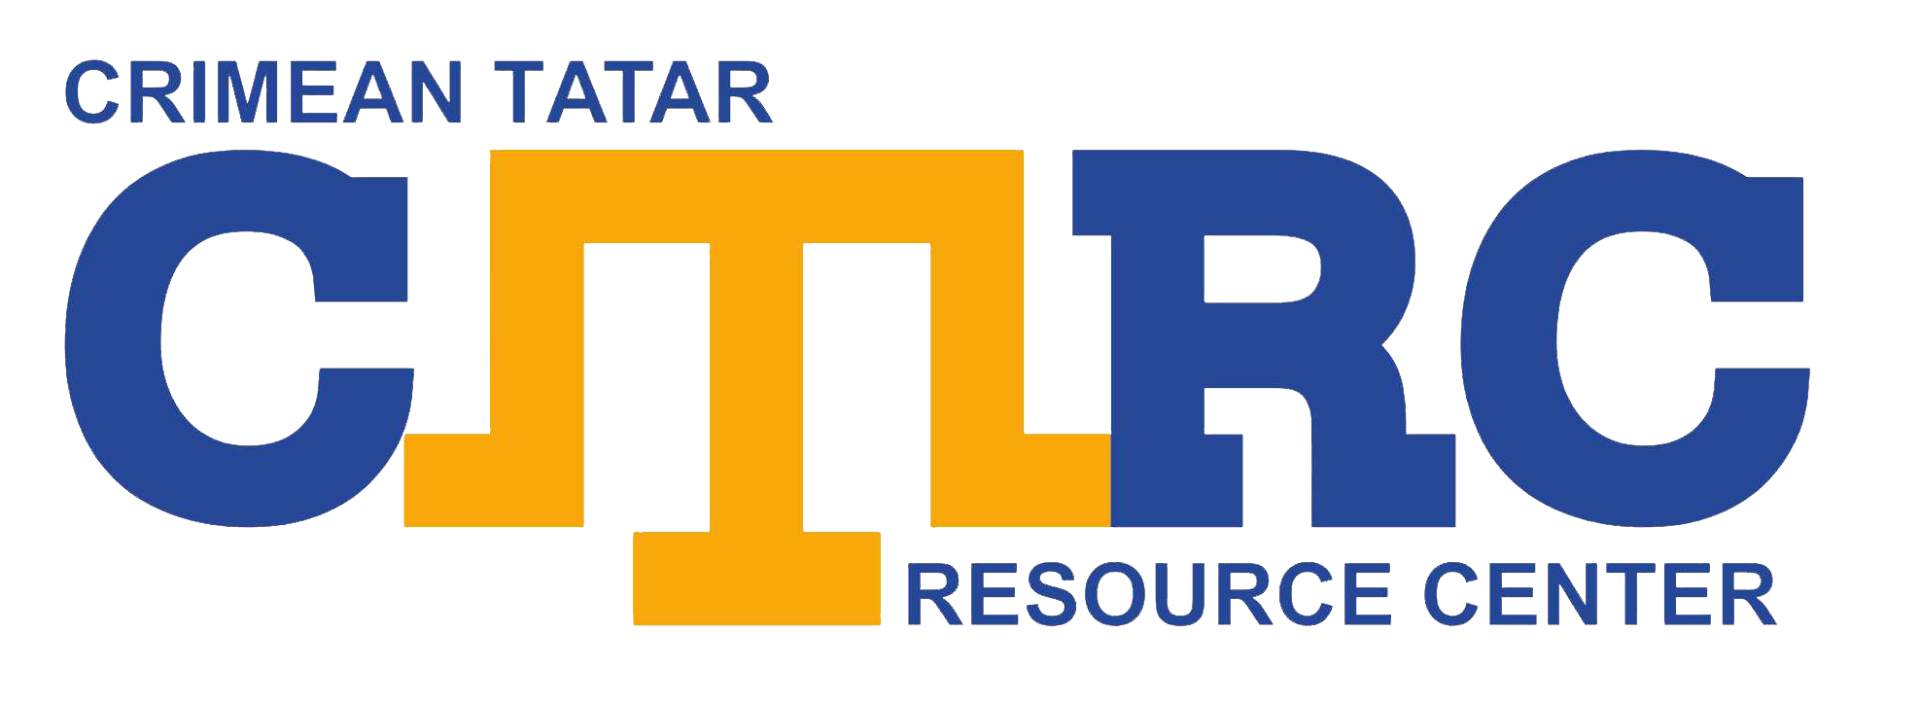 Crimean Tatar Resource Center Logo